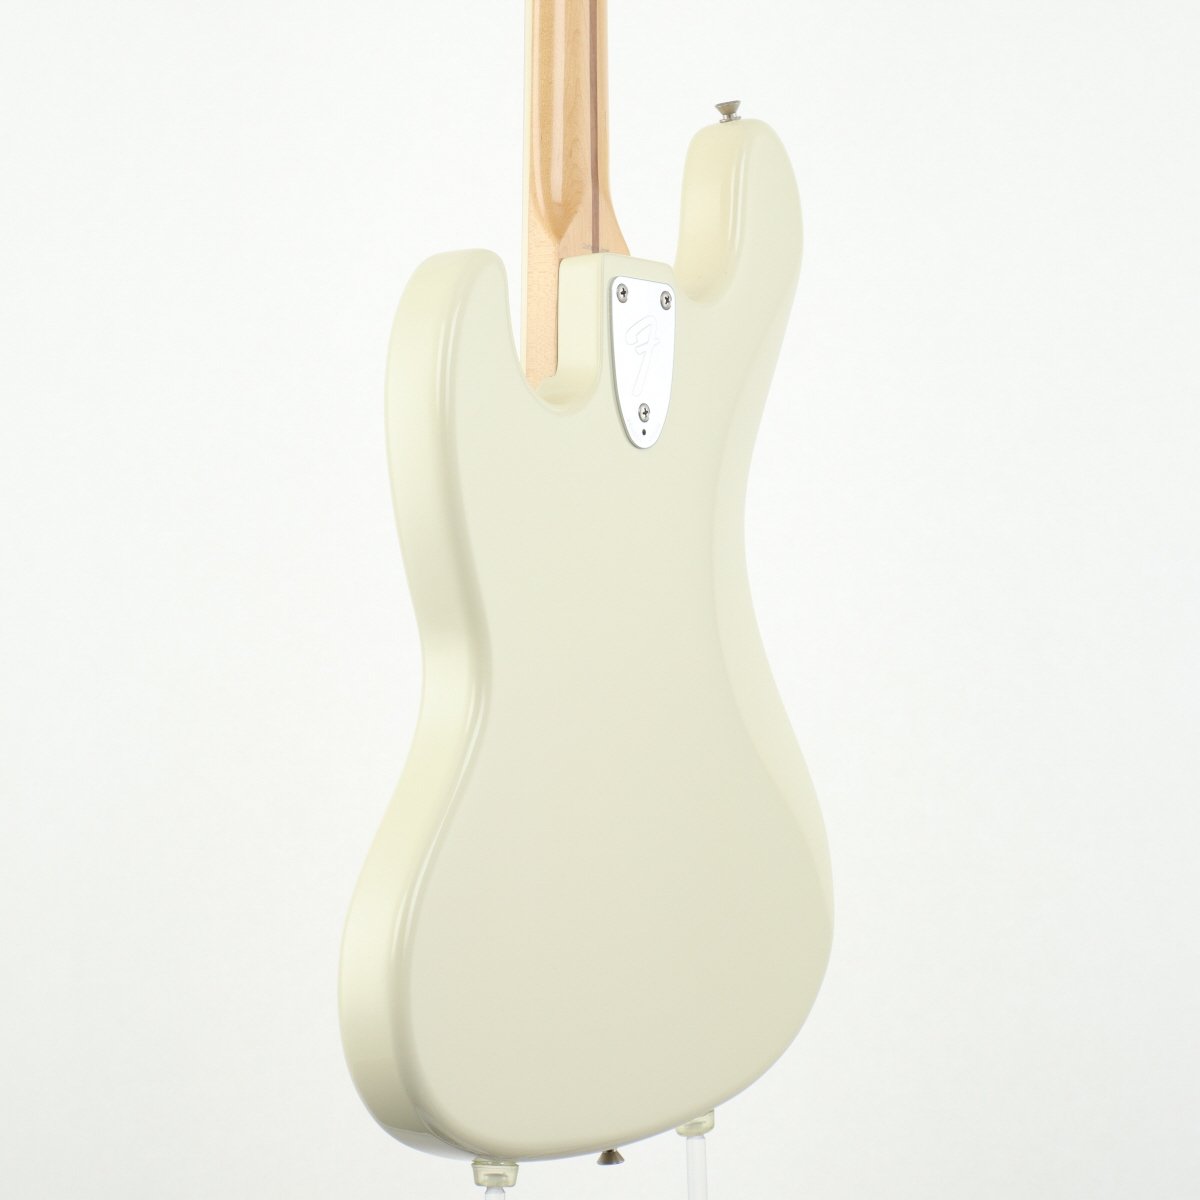 [SN CIJ R004815] USED Fender Japan / JB75-US FC Vintage White [11]